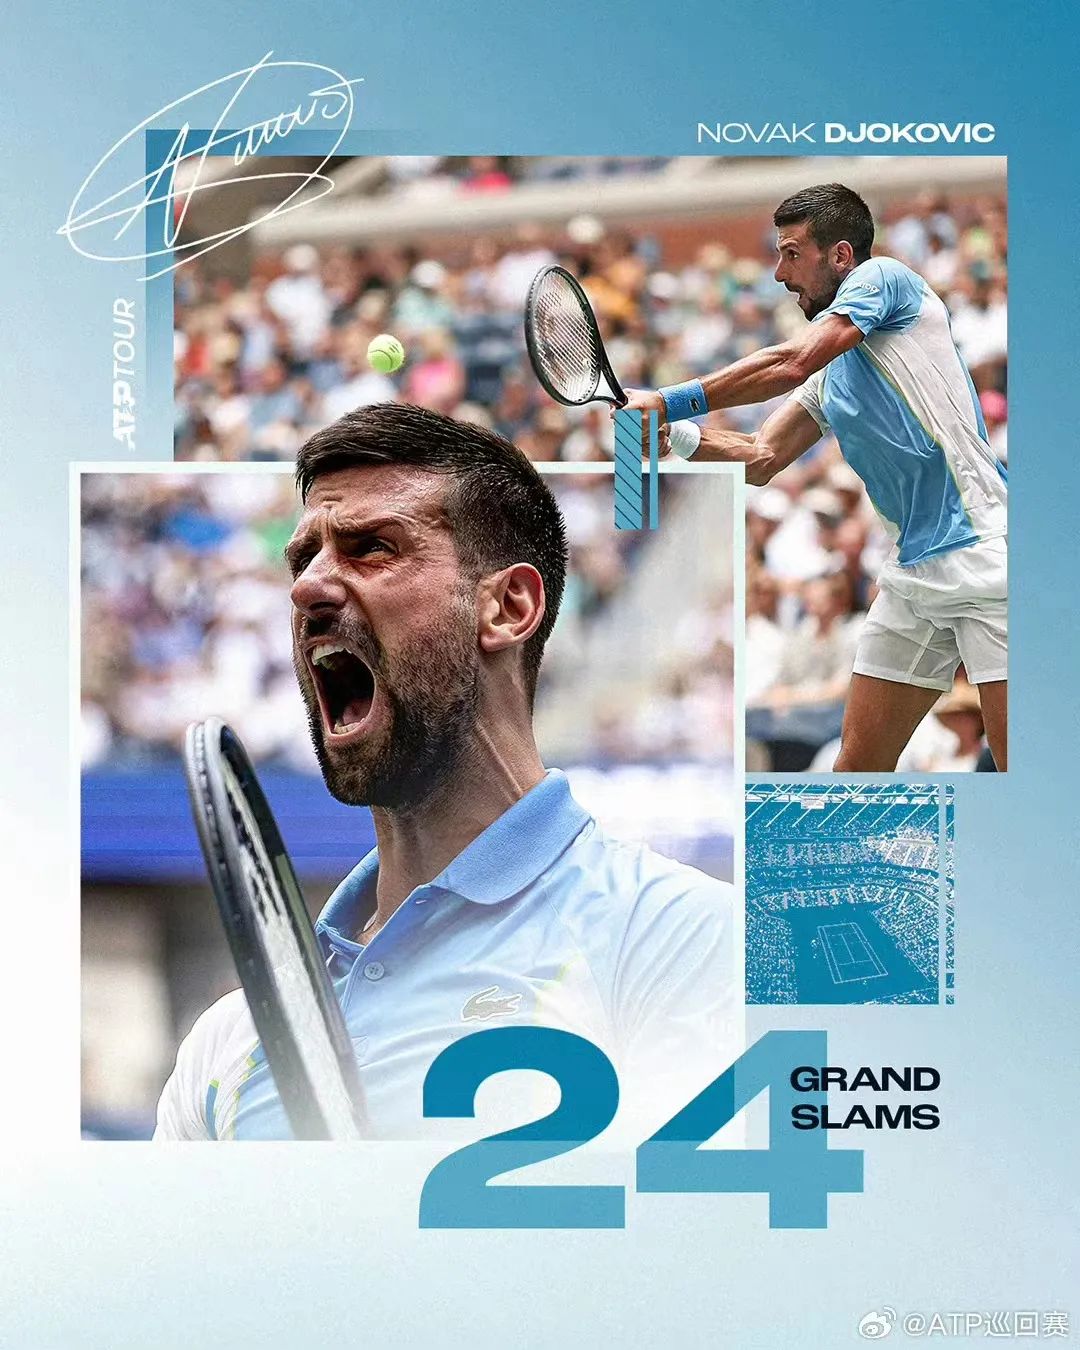 ATP(国际职业网球联合会)巡回赛官方微博